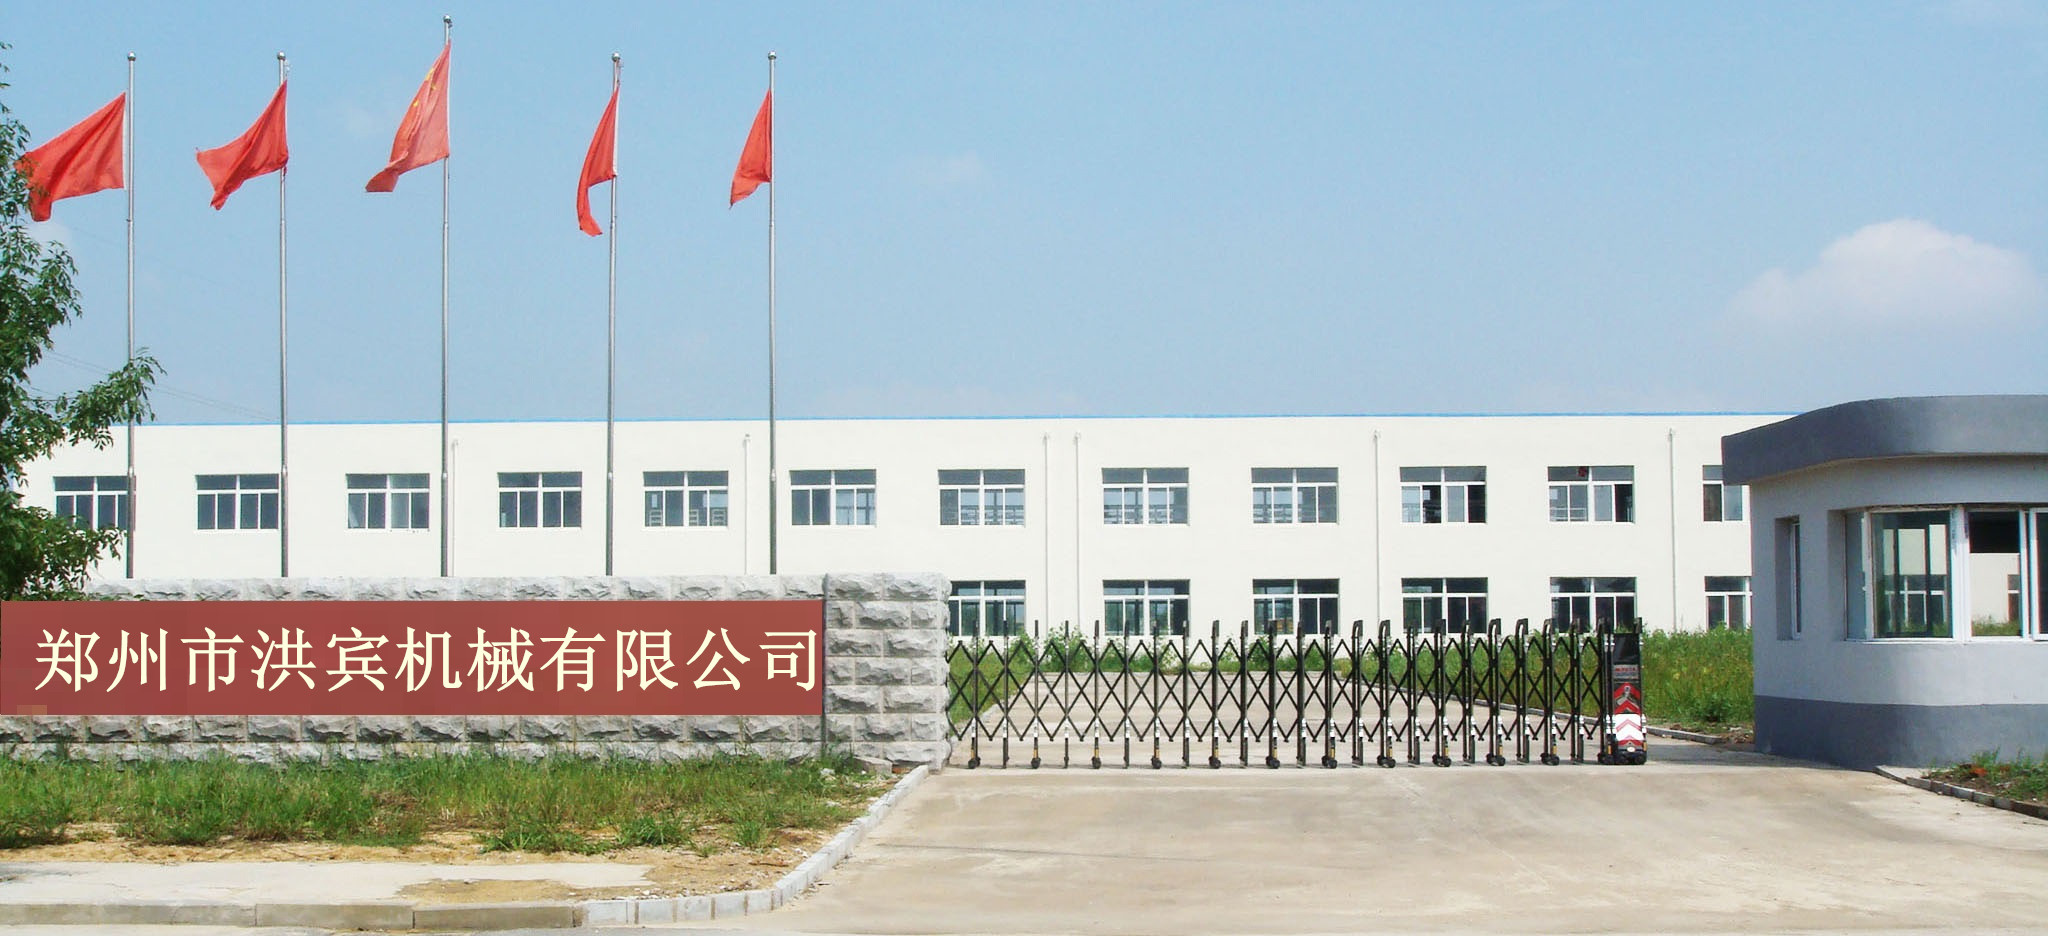 关于上海志堂机械工程有限公司http://www.zhitangjx.com	的信息